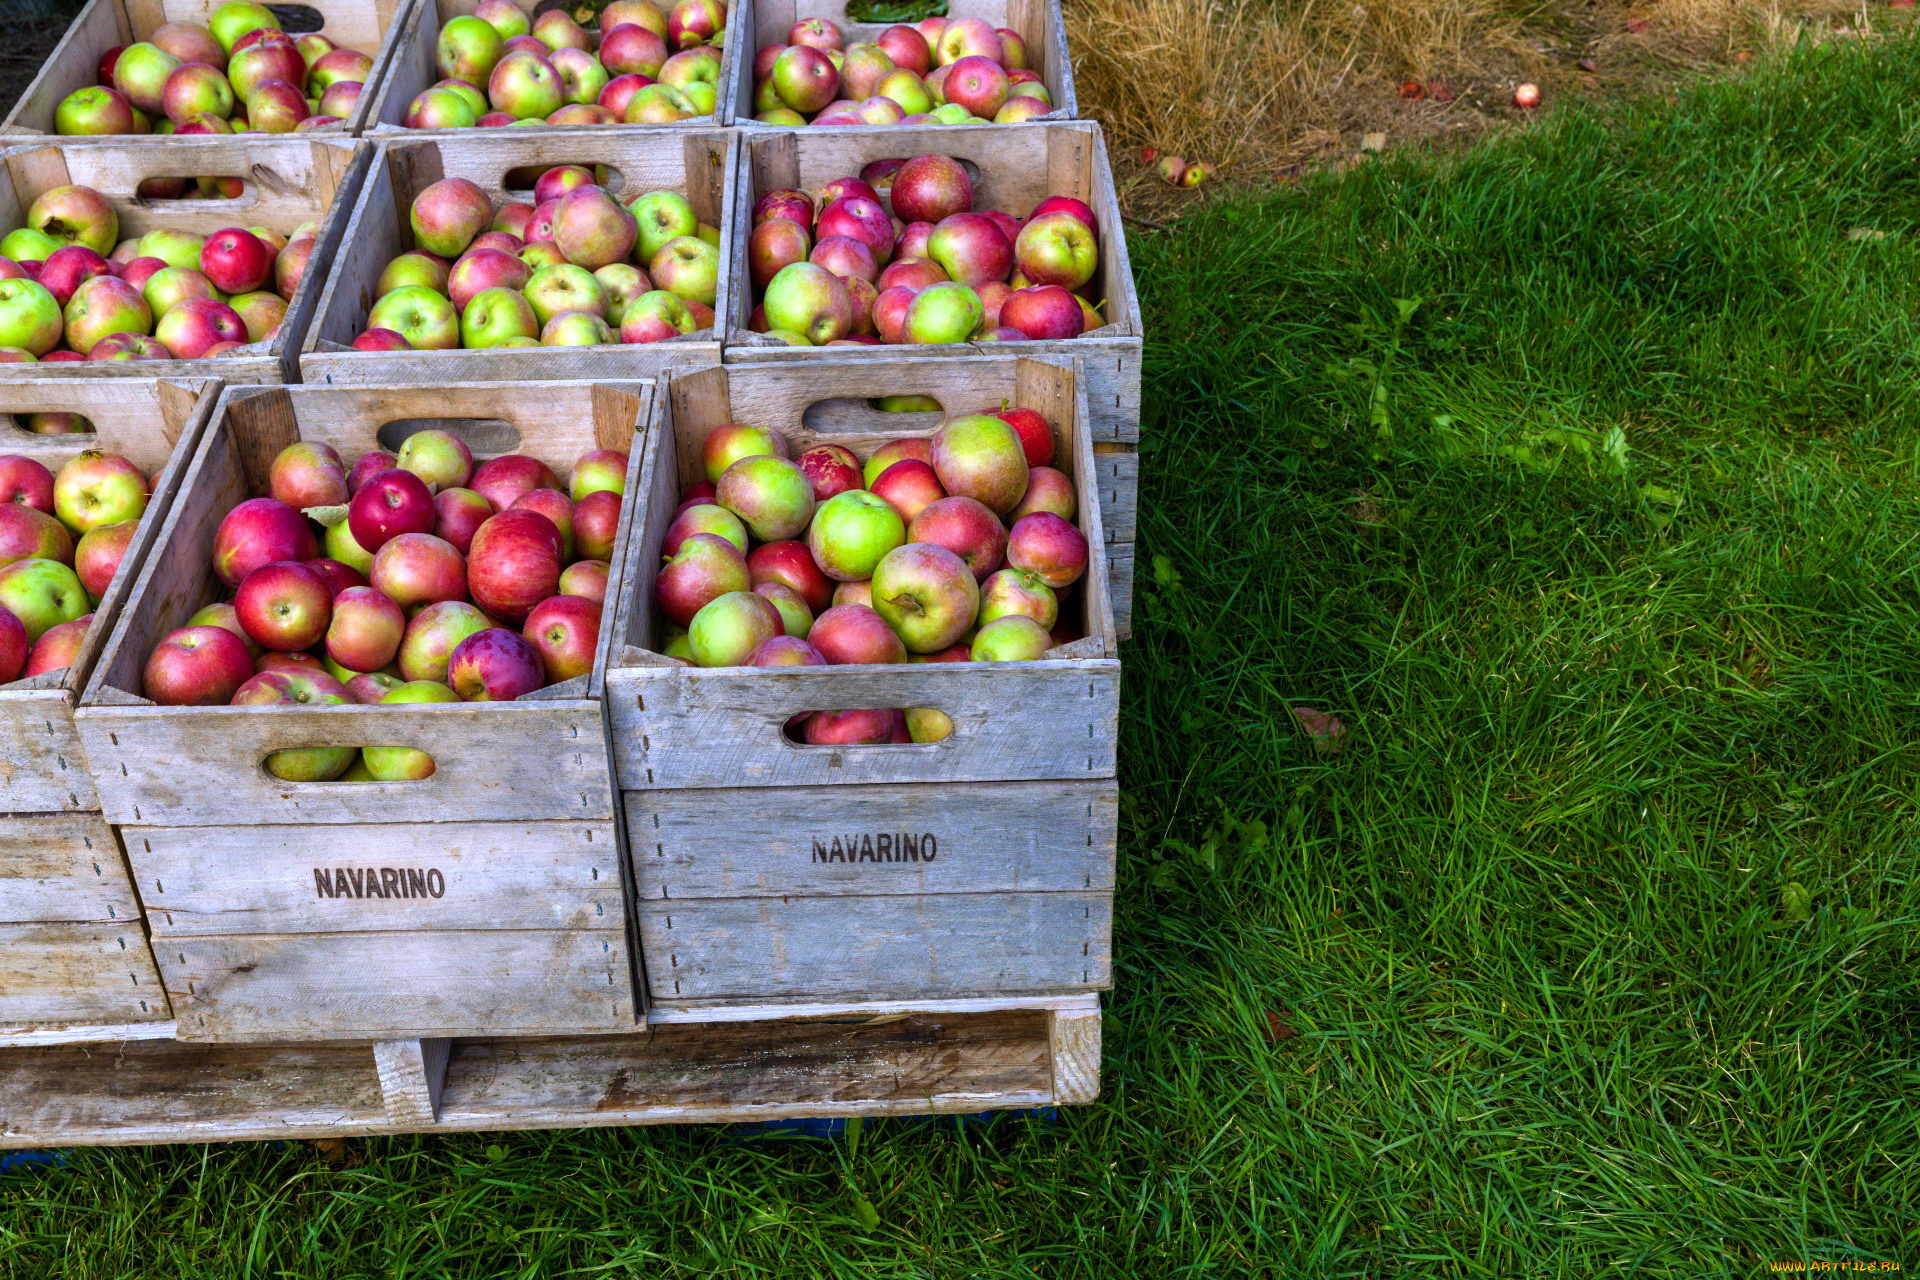 Сколько ящиков собрали яблок. Ящик с яблоками. Фрукты в ящике. Ящики для сбора яблок. Урожай фруктов в ящиках.